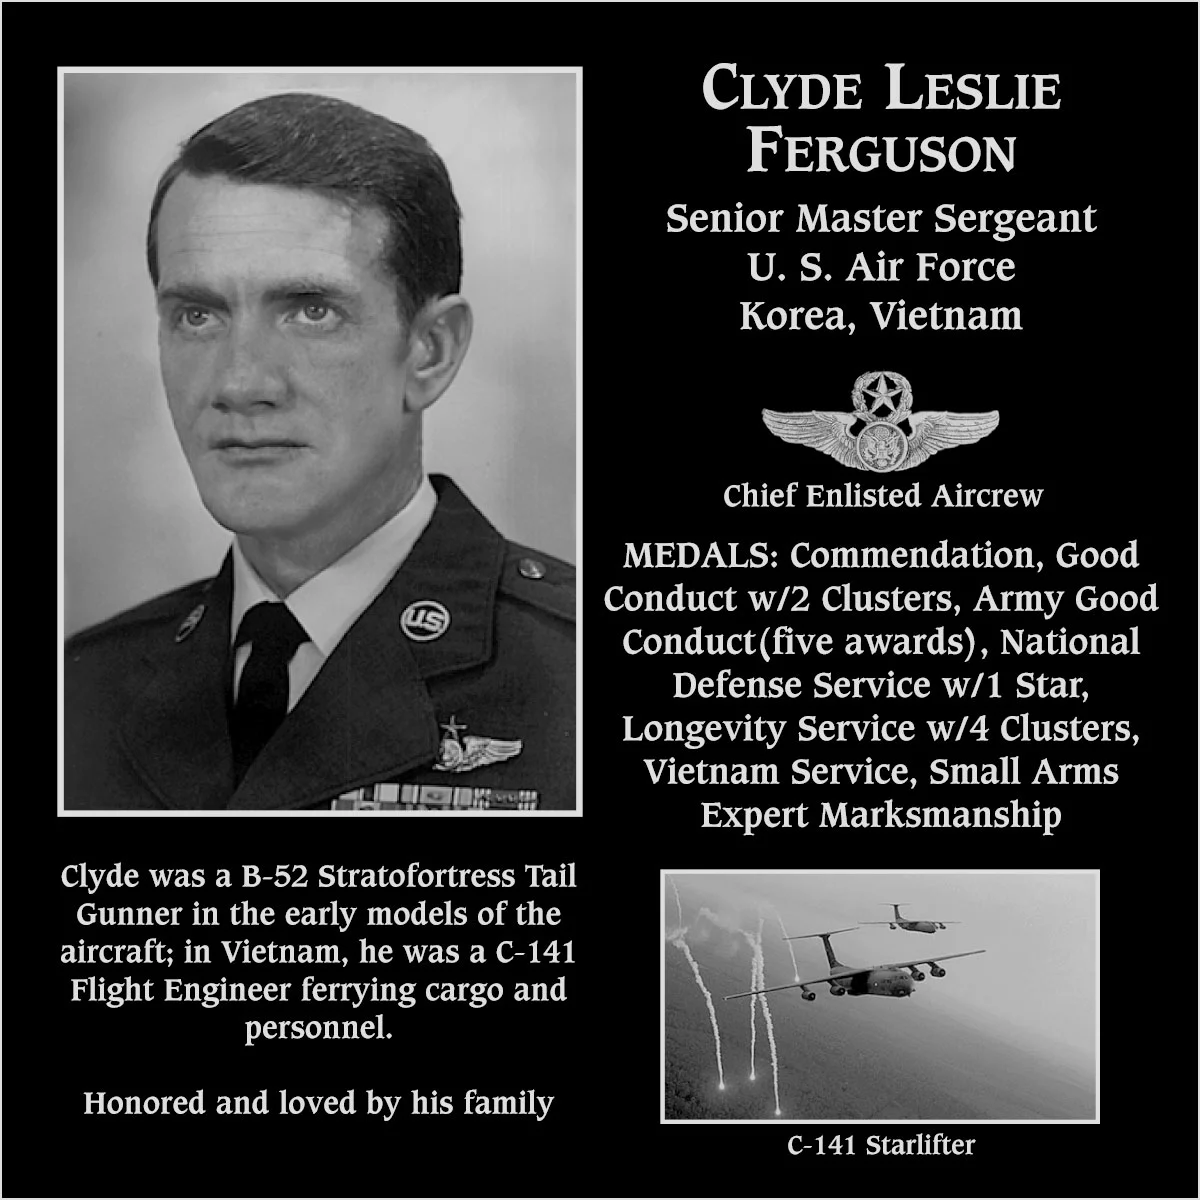 Clyde Leslie Ferguson